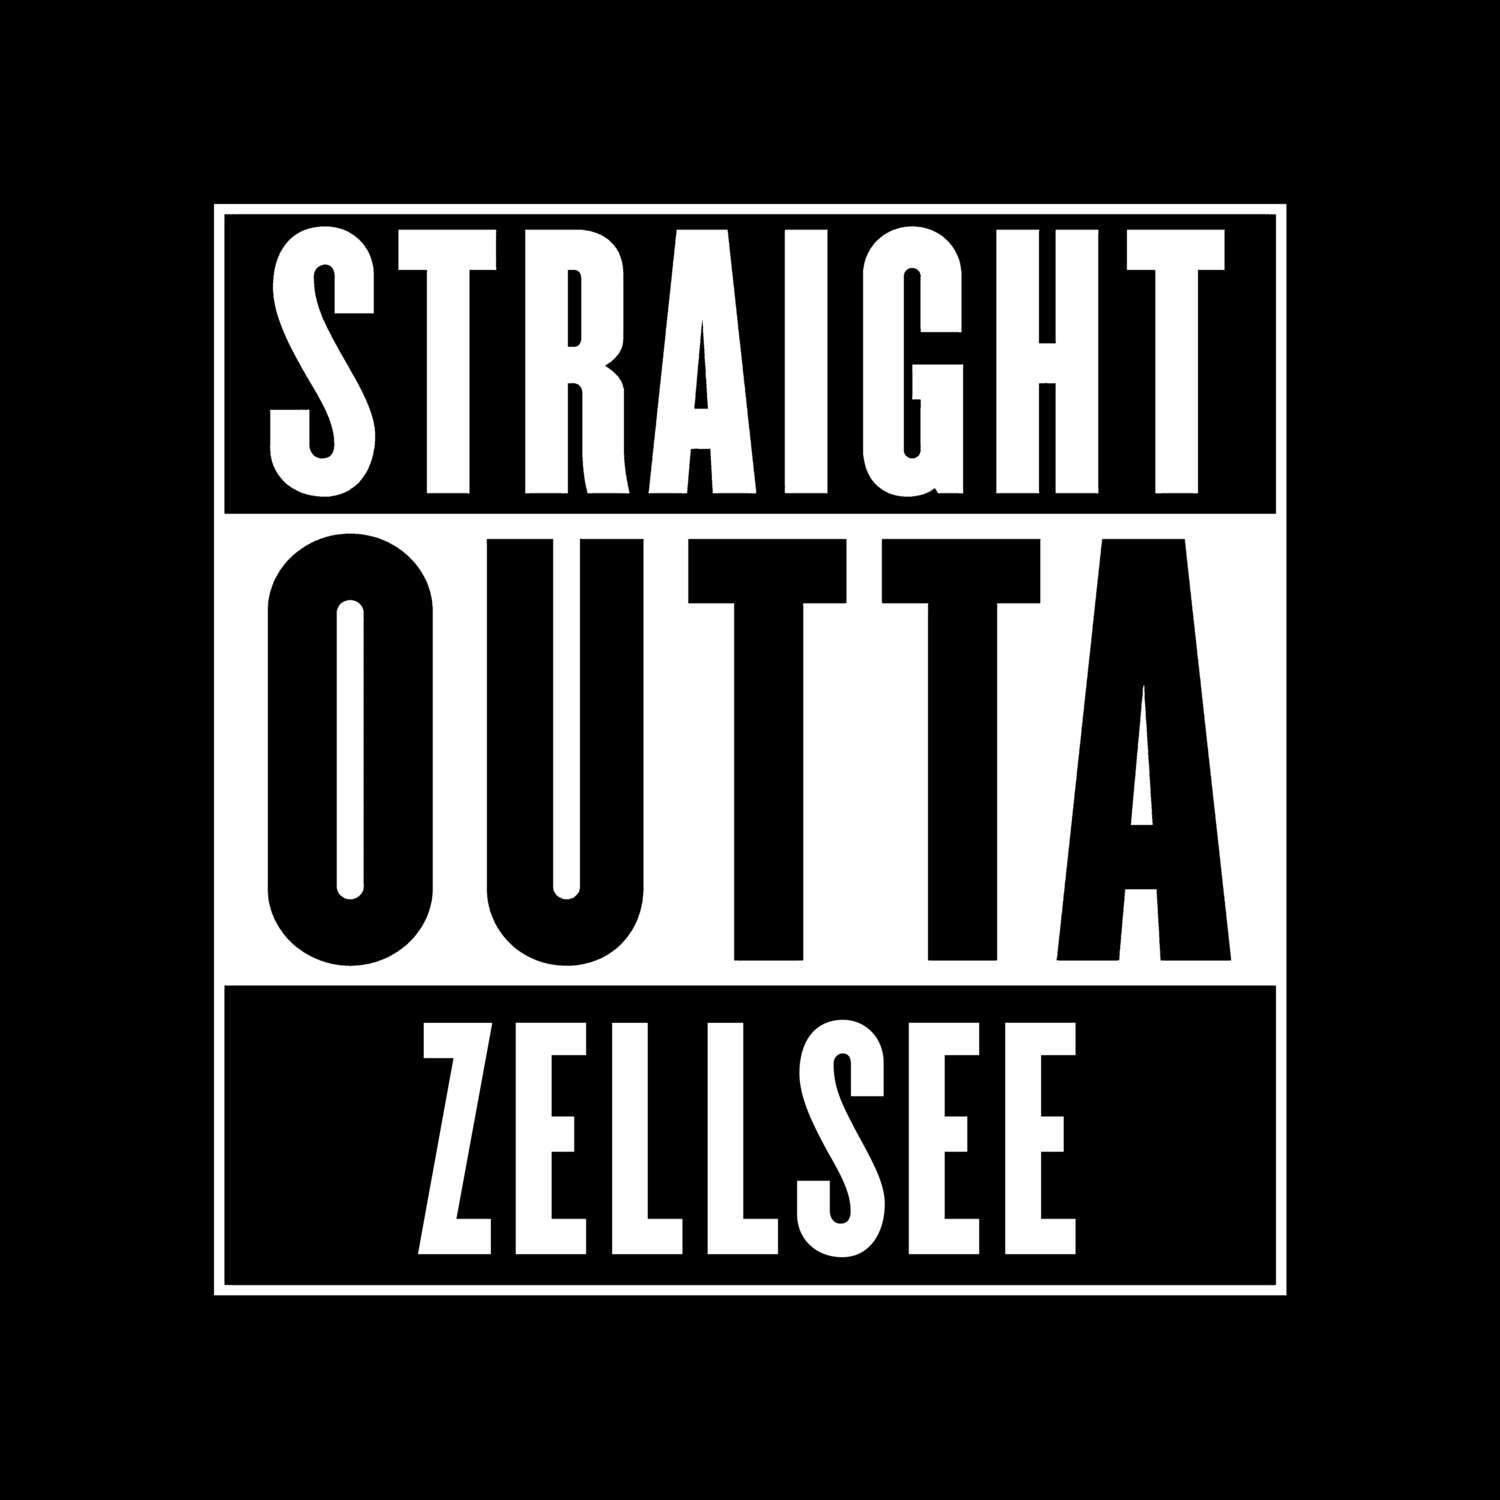 Zellsee T-Shirt »Straight Outta«